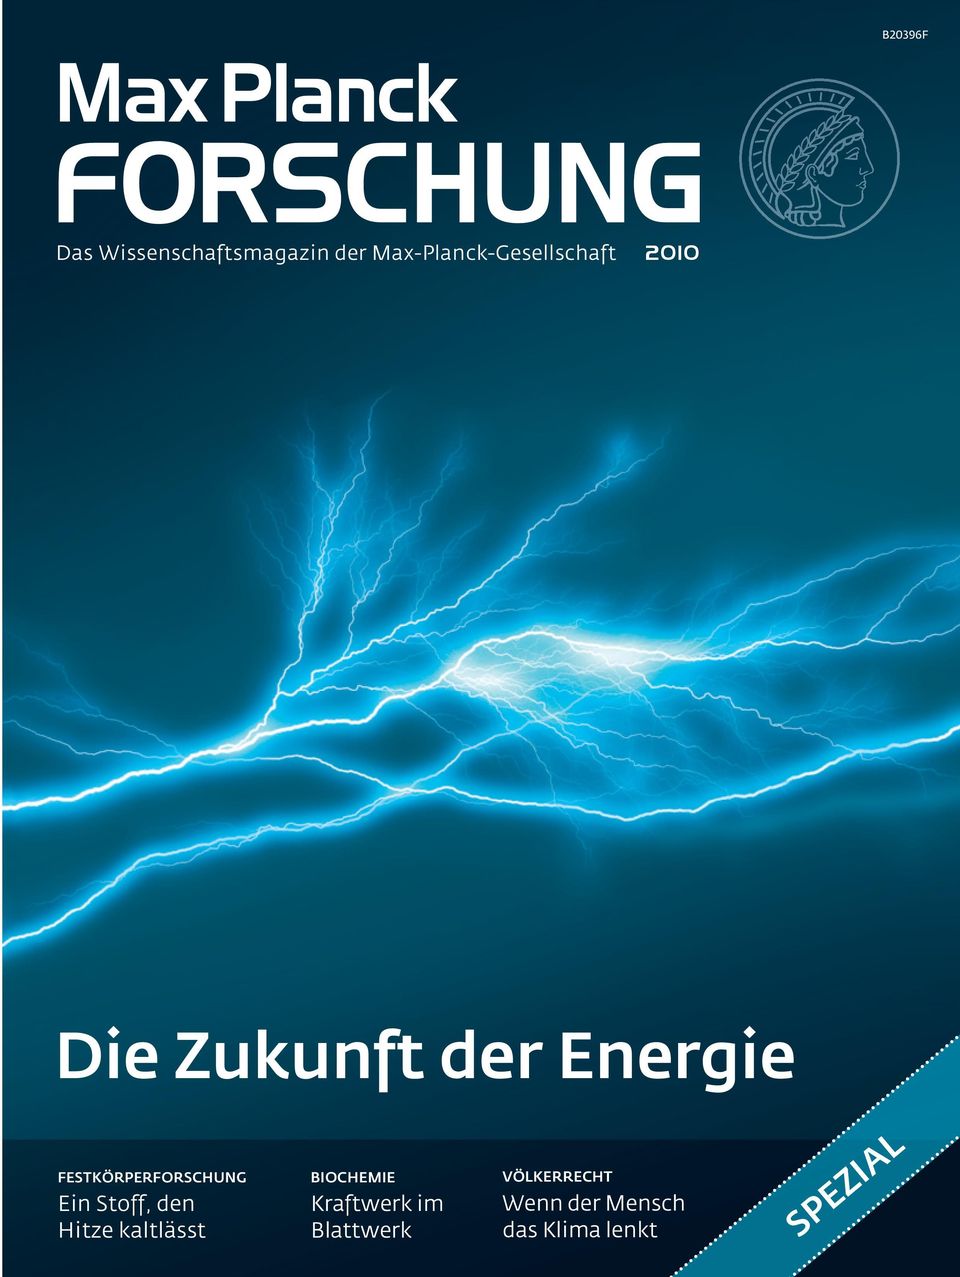 Wissenschaftsmagazin der Max-Planck-Gesellschaft 2010 Die Zukunft der Energie